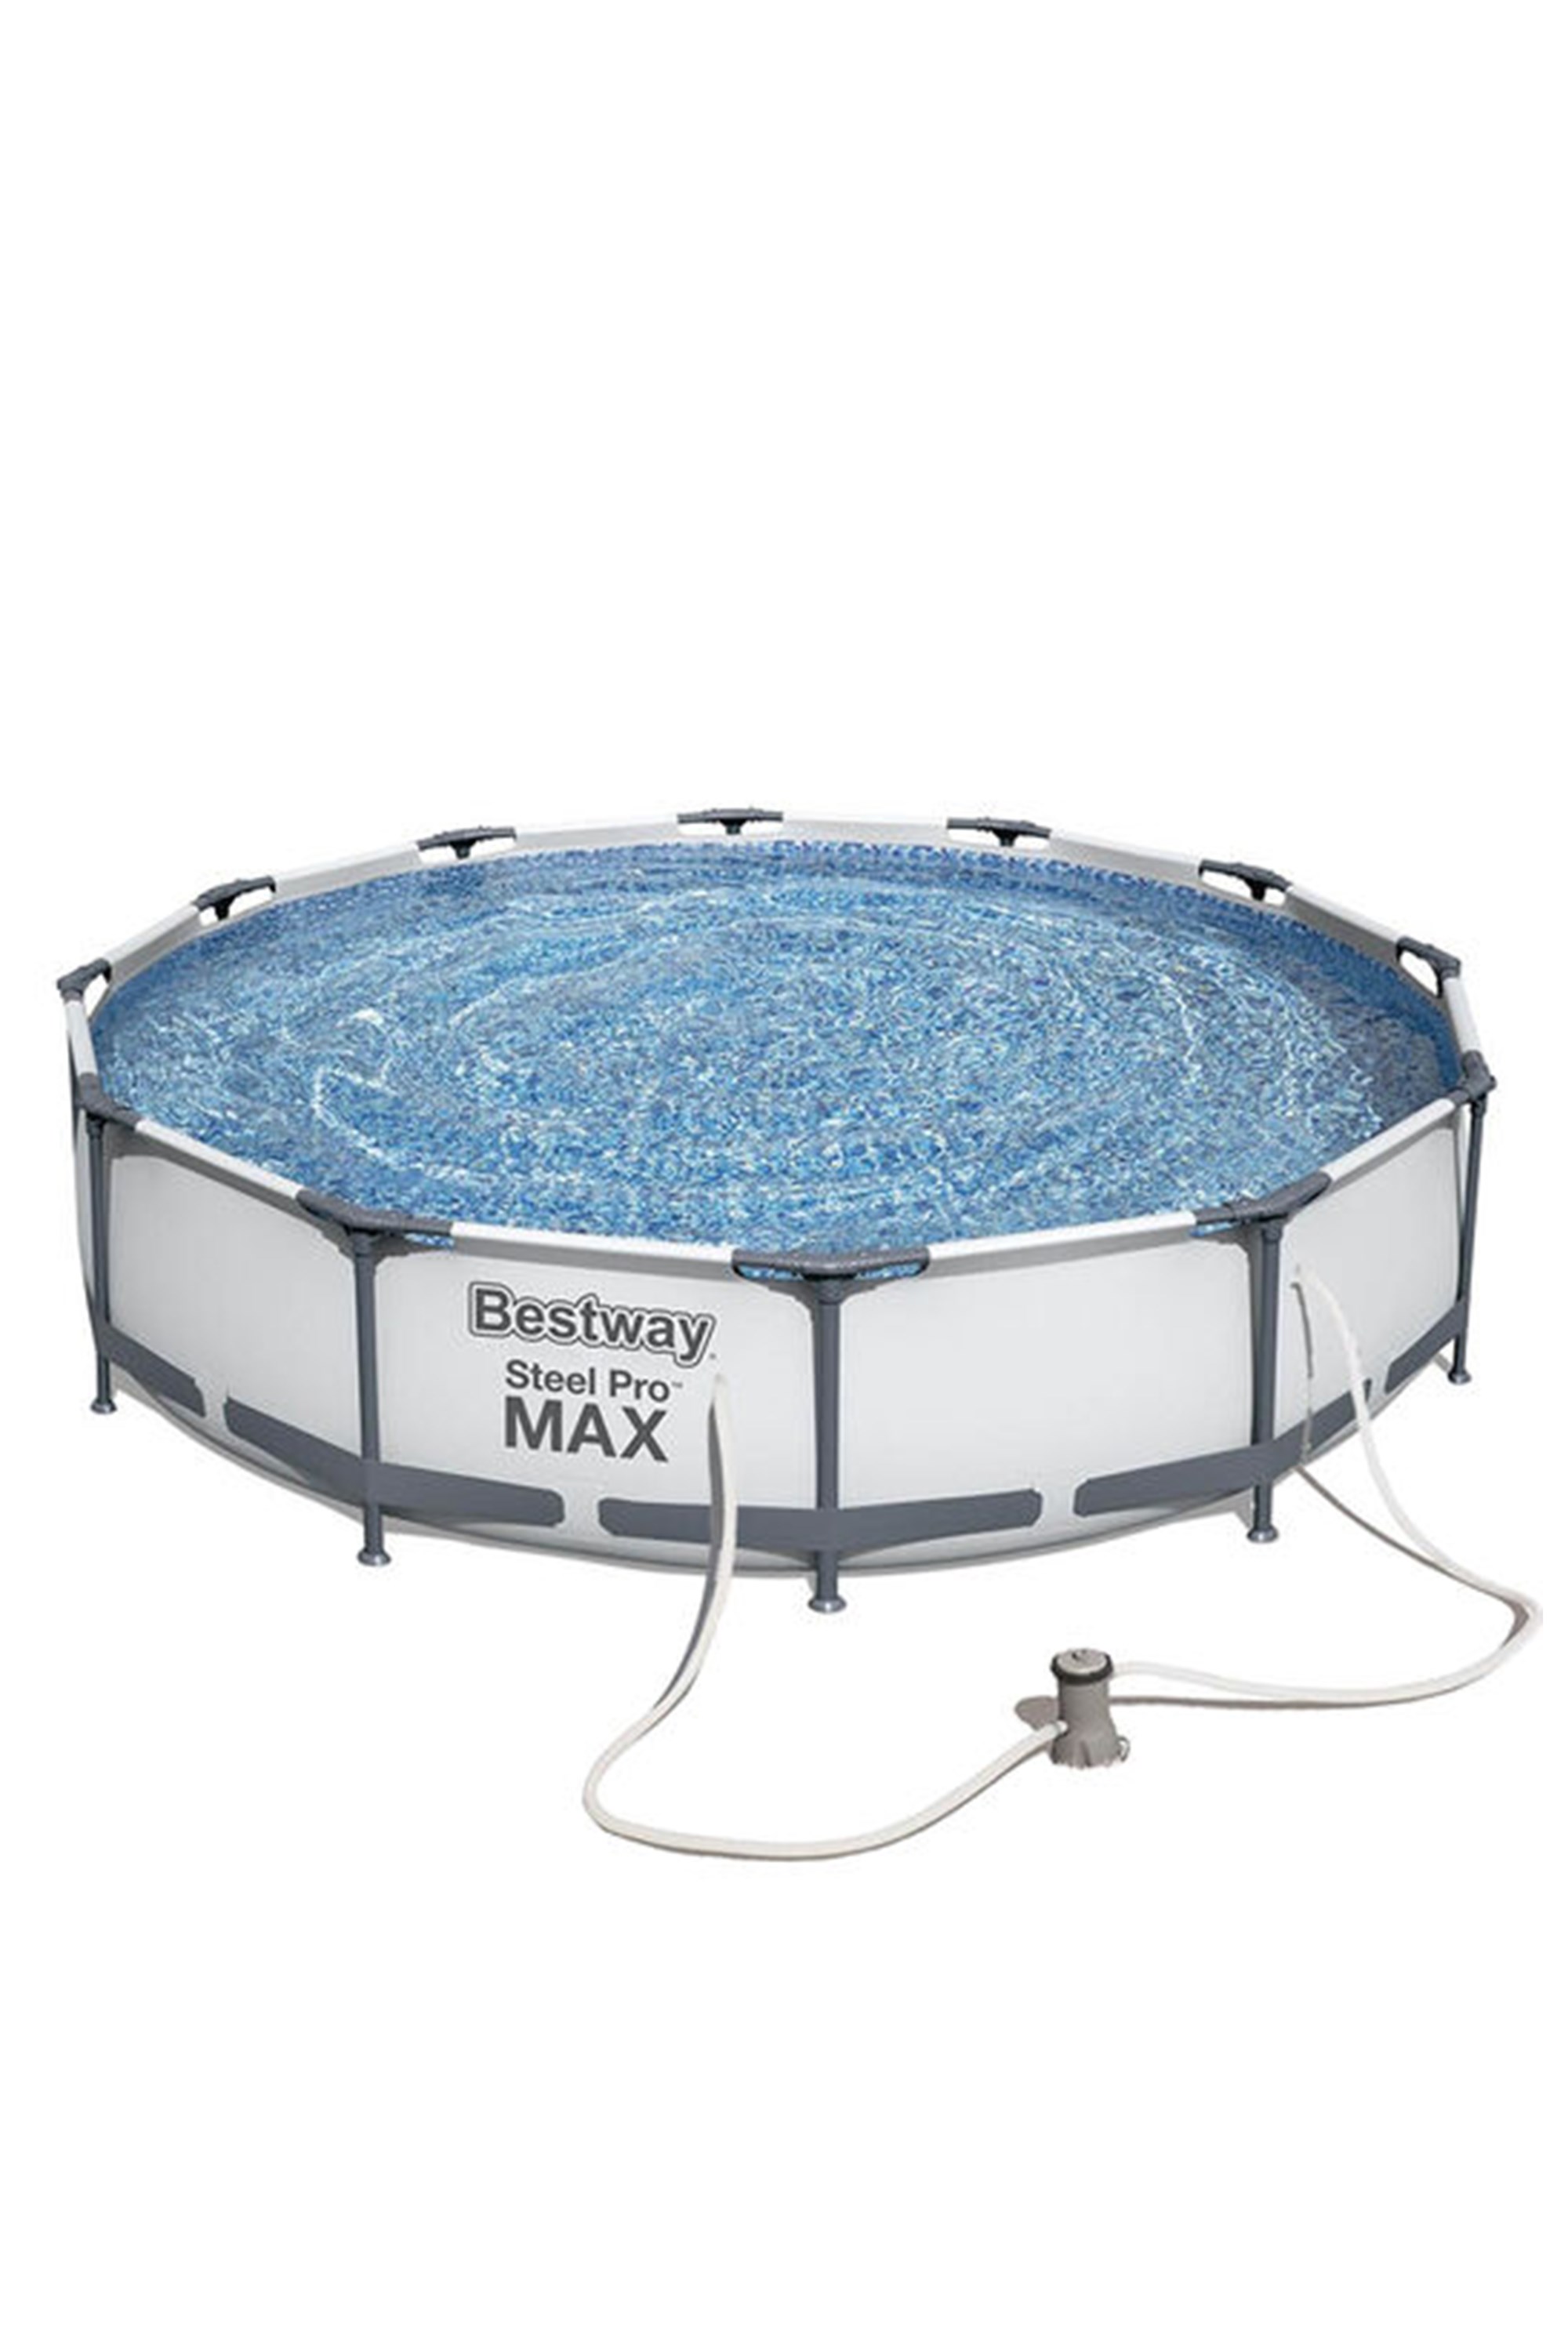 Steel Pro Max 12’ x 30" Pool Set -